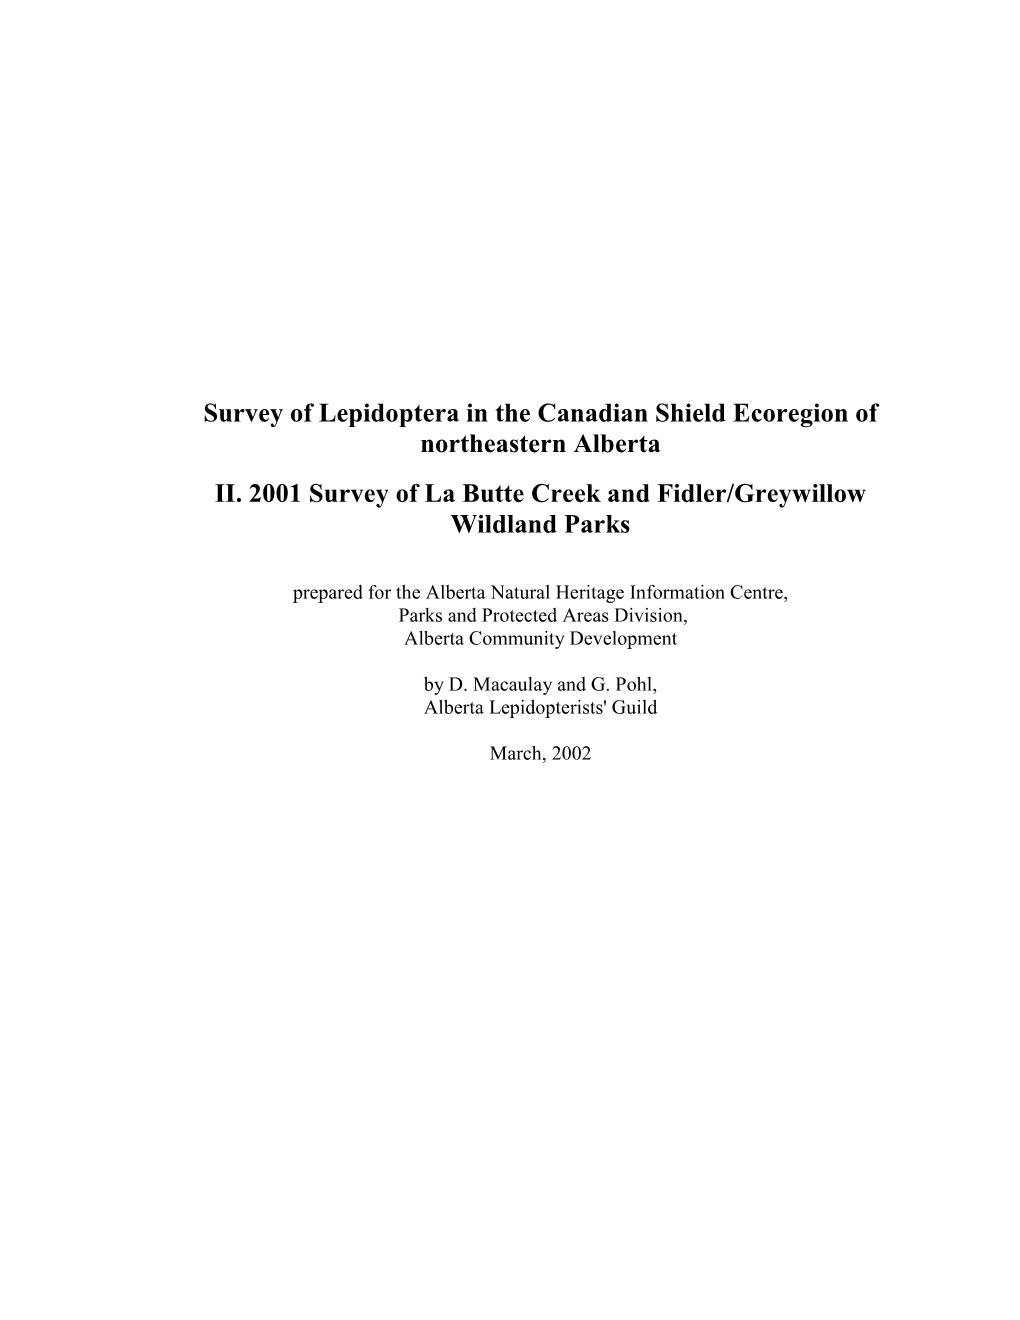 La Butte/Fidler-Greywillow Report 2001